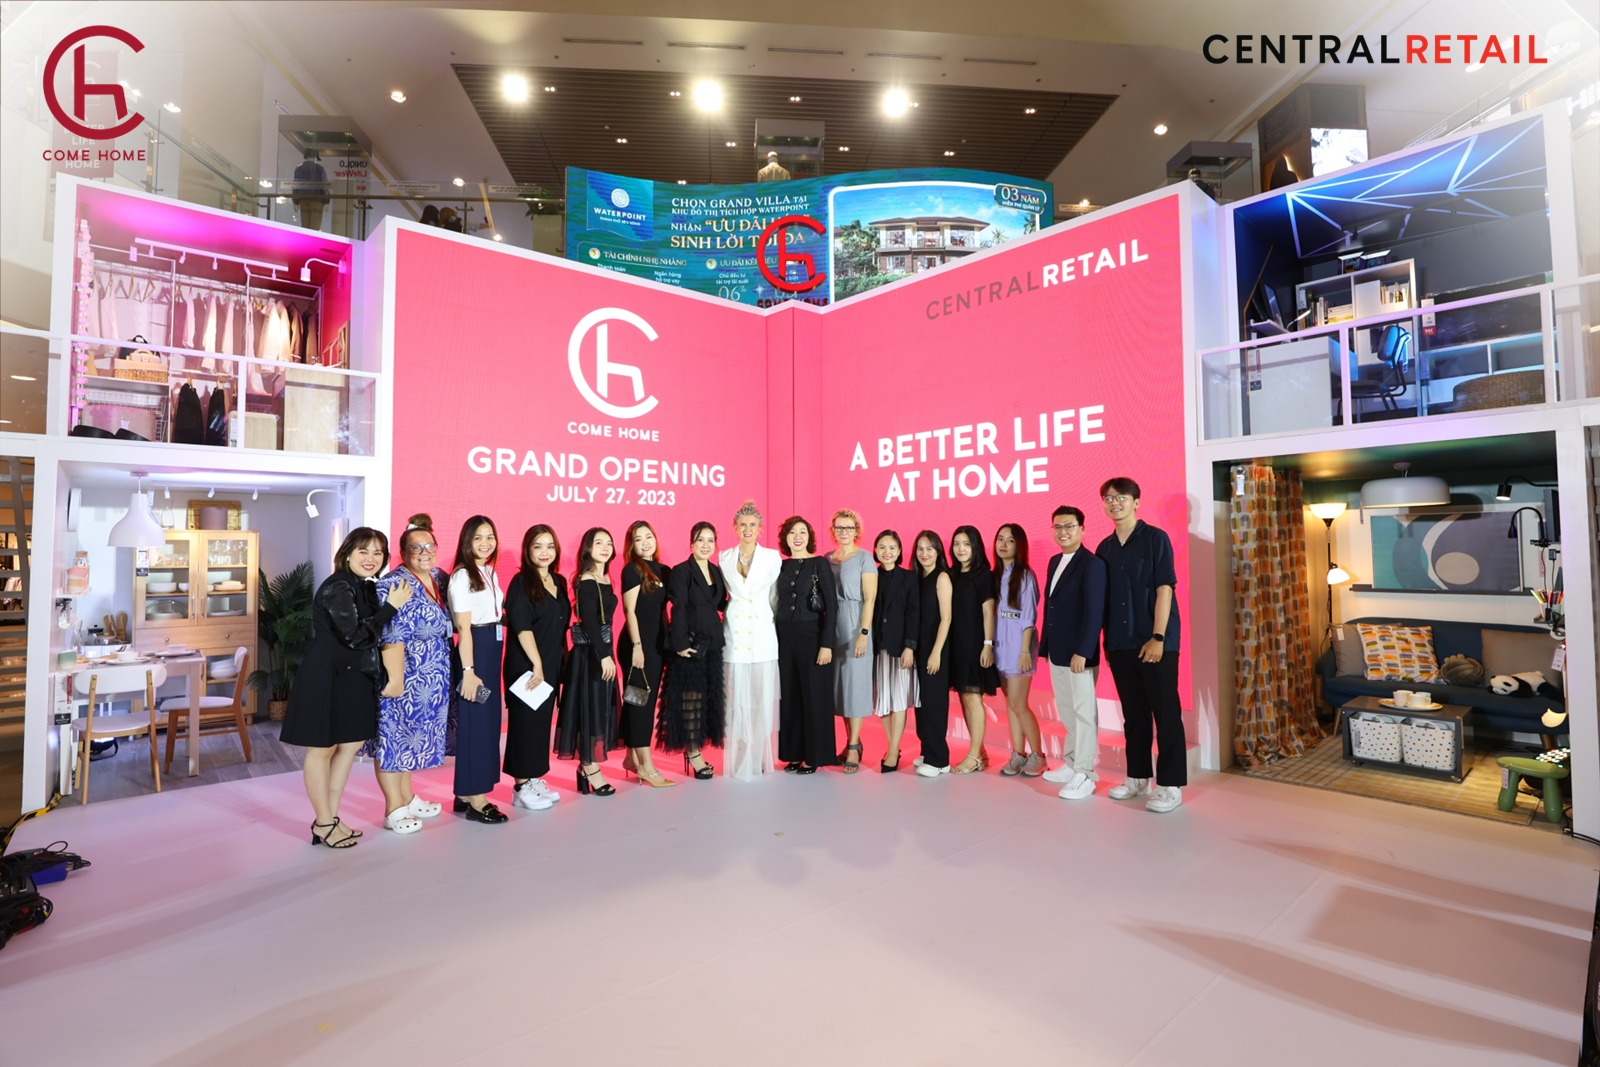 Central Retail tại Việt Nam tổ chức sự kiện khai trương công bố thương hiệu mới nhất của Tập đoàn – COME HOME Việt Nam